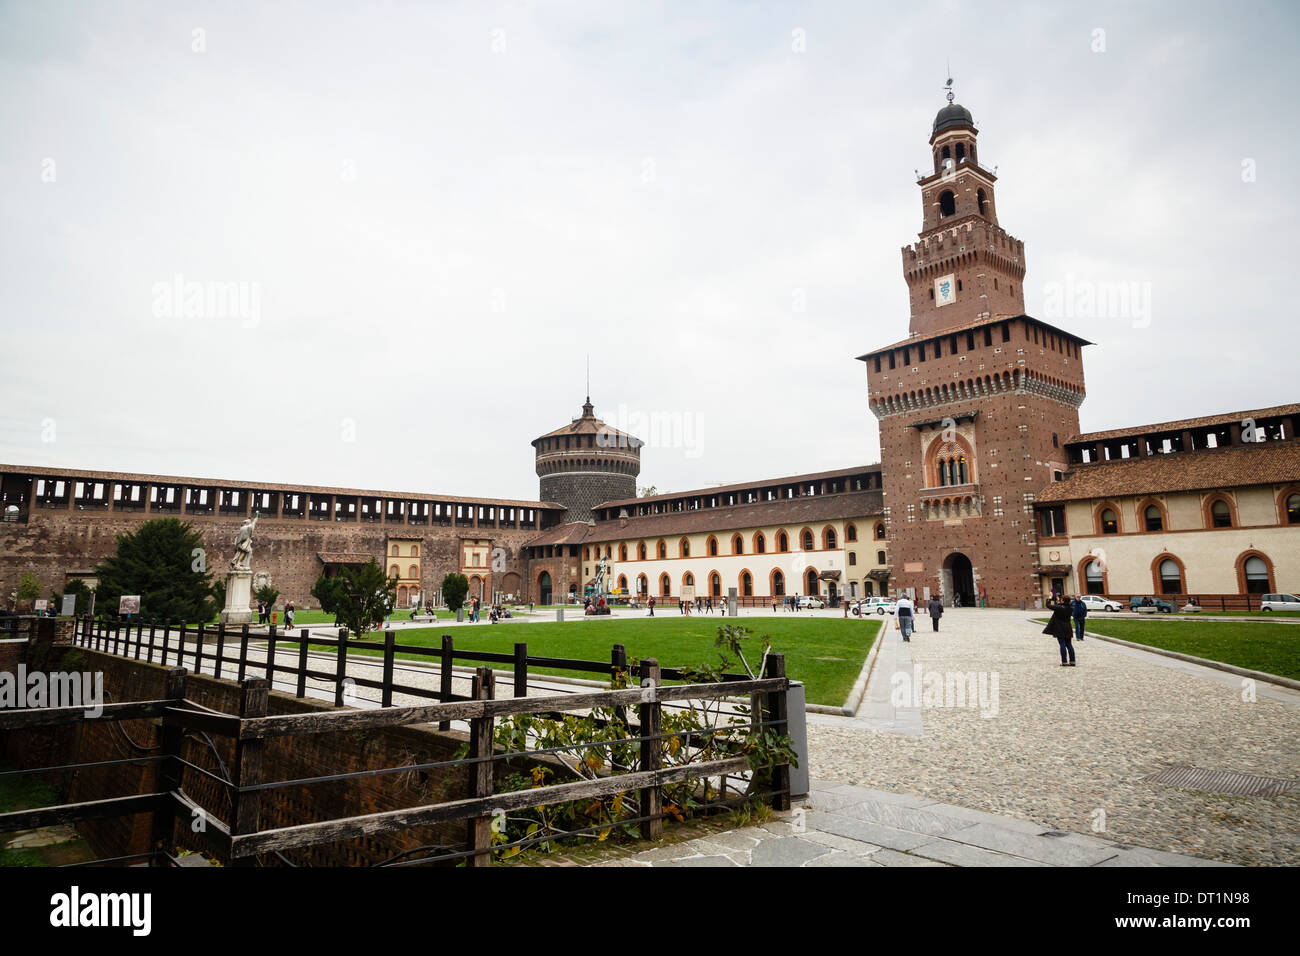 Castello Sforzesco (Sforza Castle), Milan, Lombardy, Italy, Europe Stock Photo